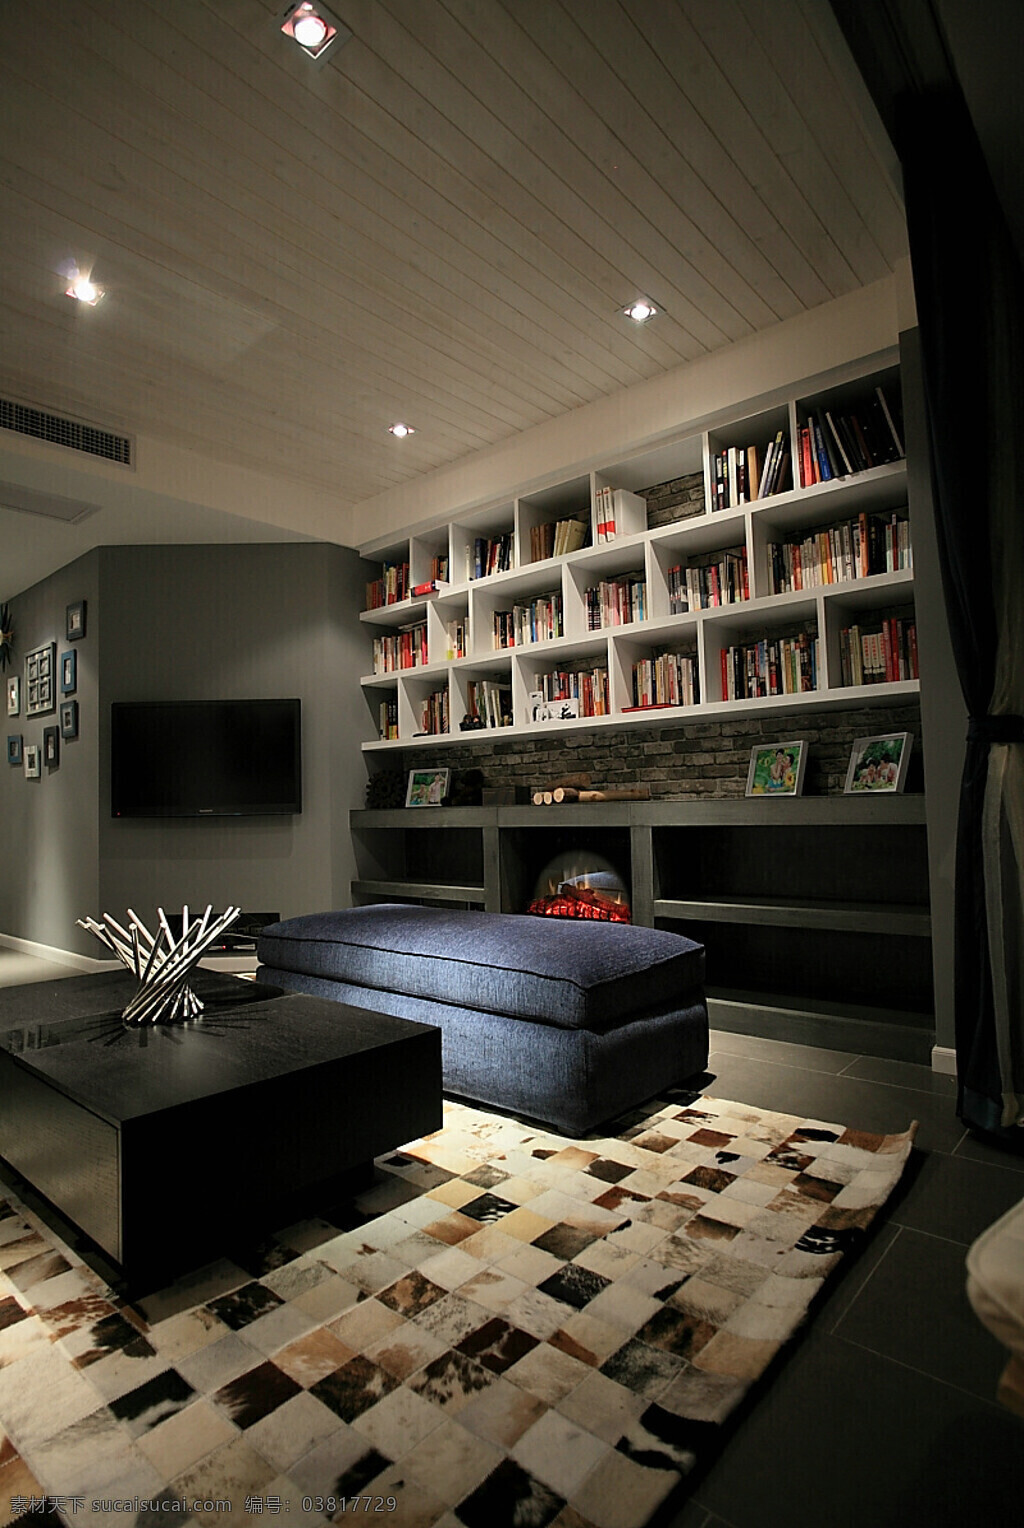 创意 别墅 现代 书房 效果图 3d模型 创意地毯设计 电视机 黑色 软 装 室内设计 设计素材 室内装修 书柜 书籍 现代时尚